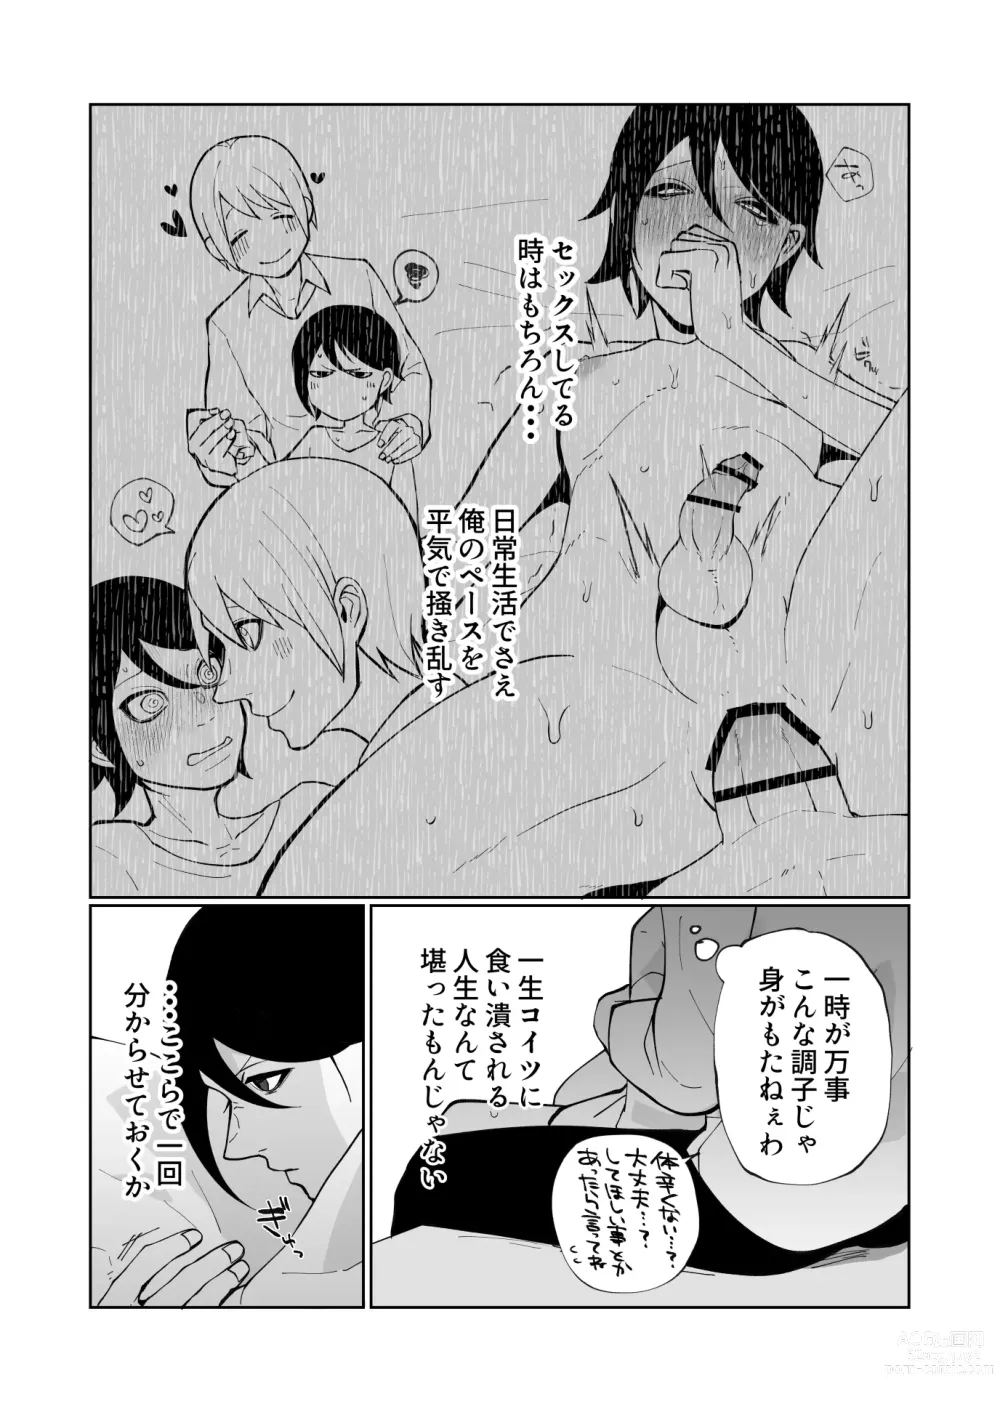 Page 6 of doujinshi Wakaraseru Hazu datta noni Kekkyoku Wakaraserarete Renzoku Shiofuki Zecchou Saserareta